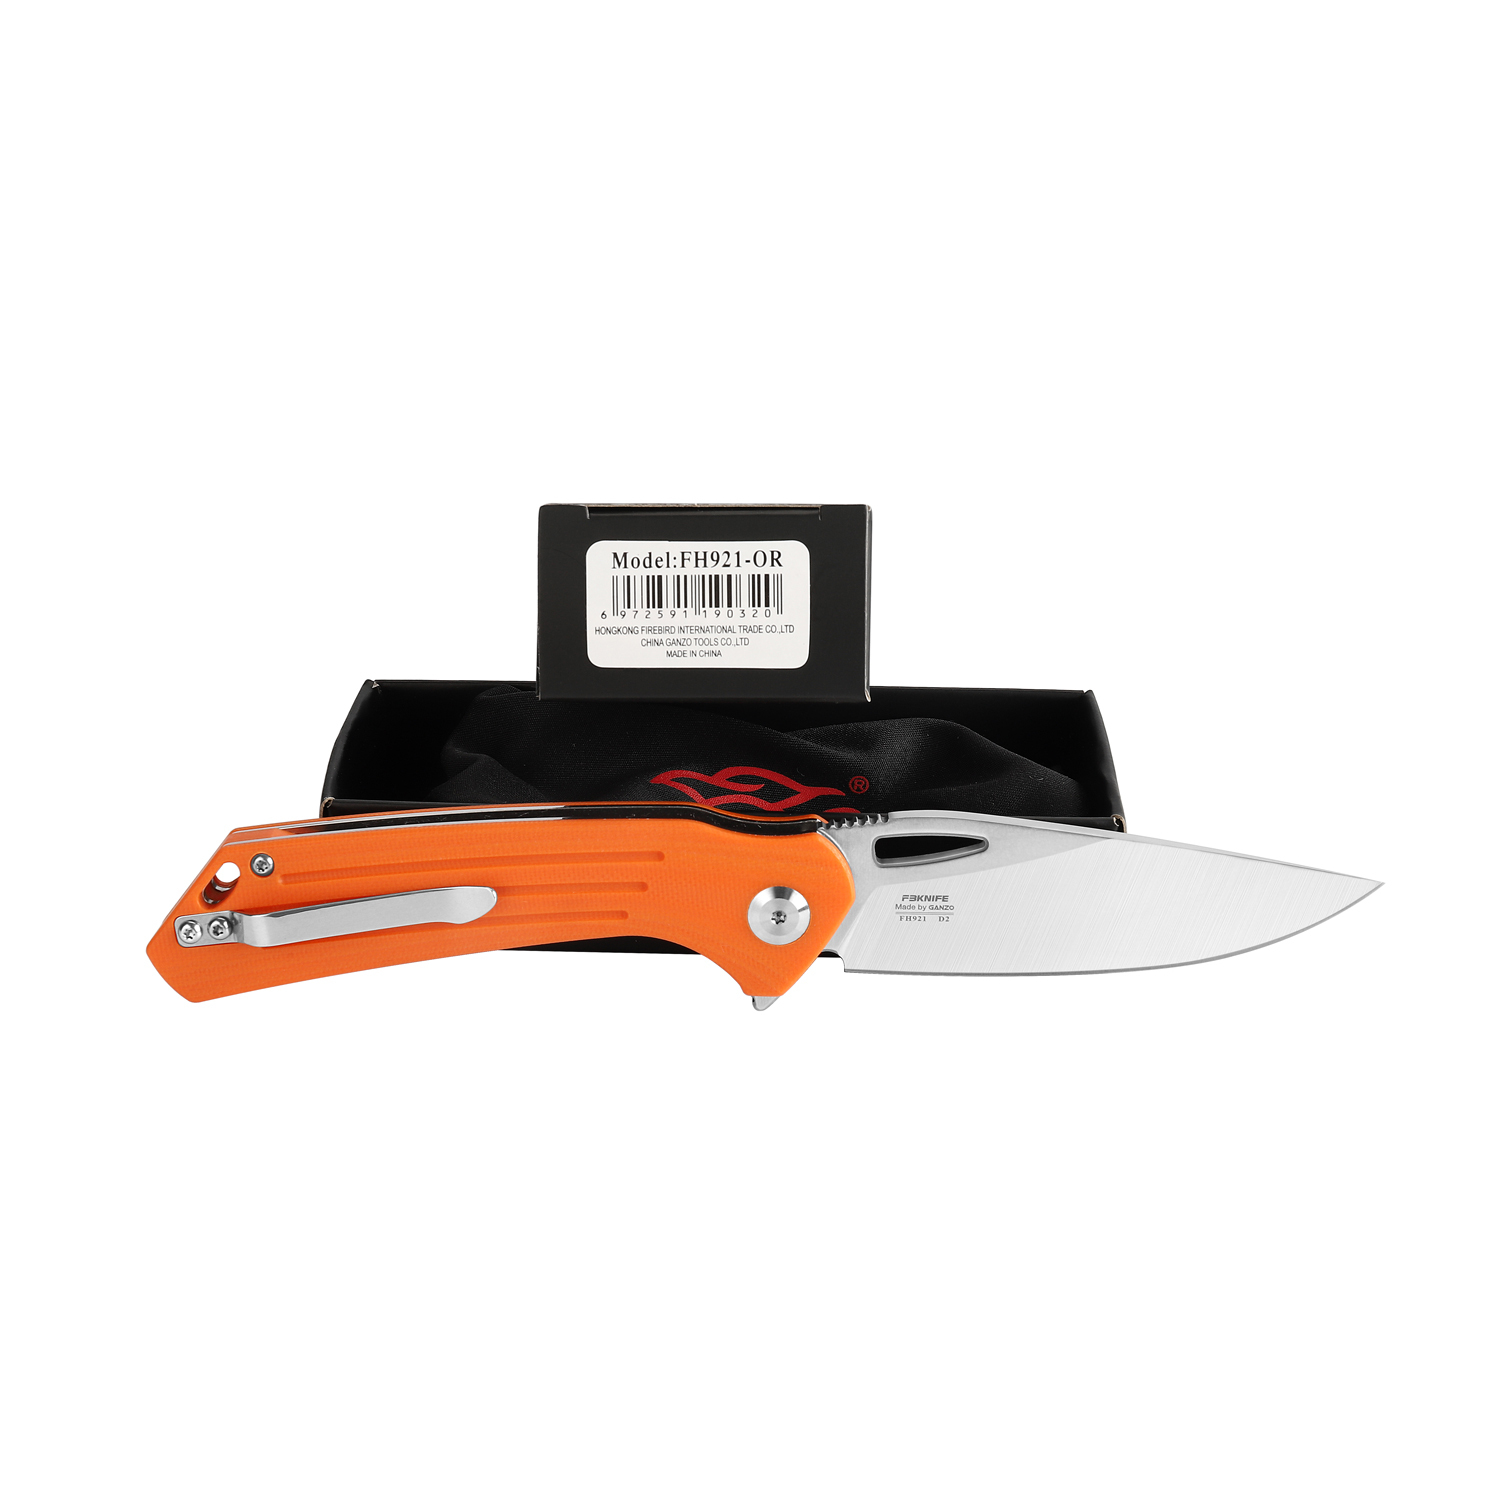 Складной нож Firebird FH921-OR, сталь D2, рукоять G10 оранжевая - фото 6